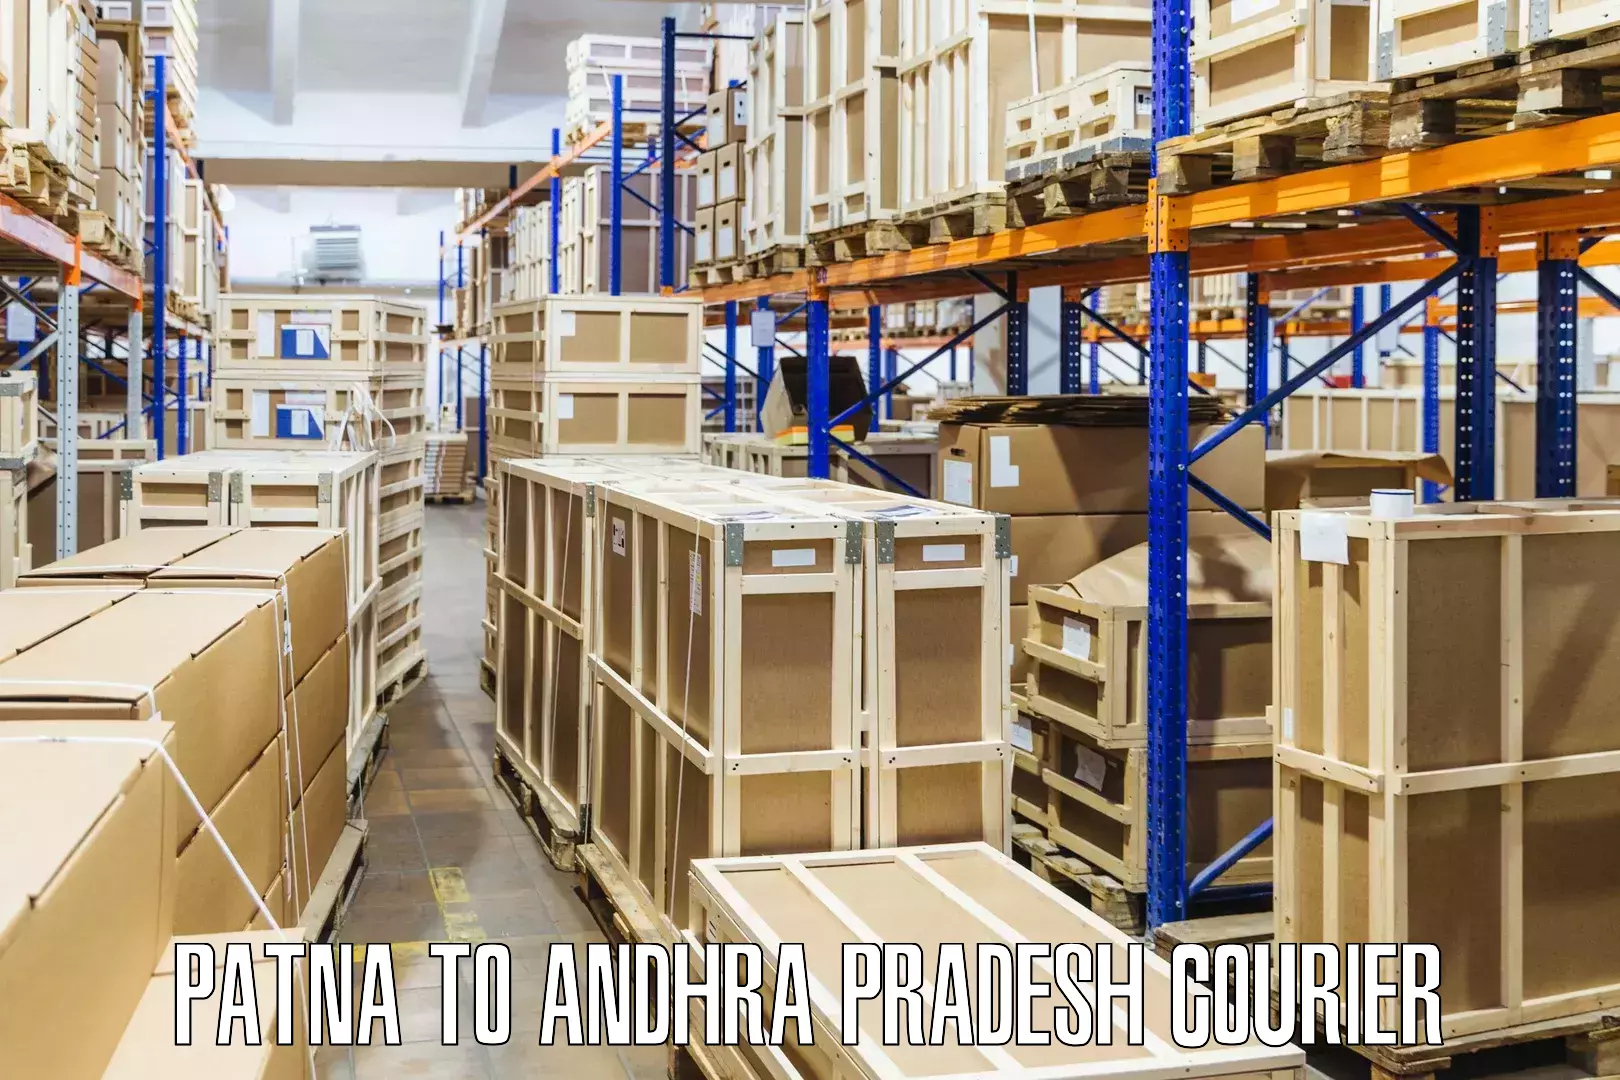 Flexible shipping options Patna to Andhra Pradesh